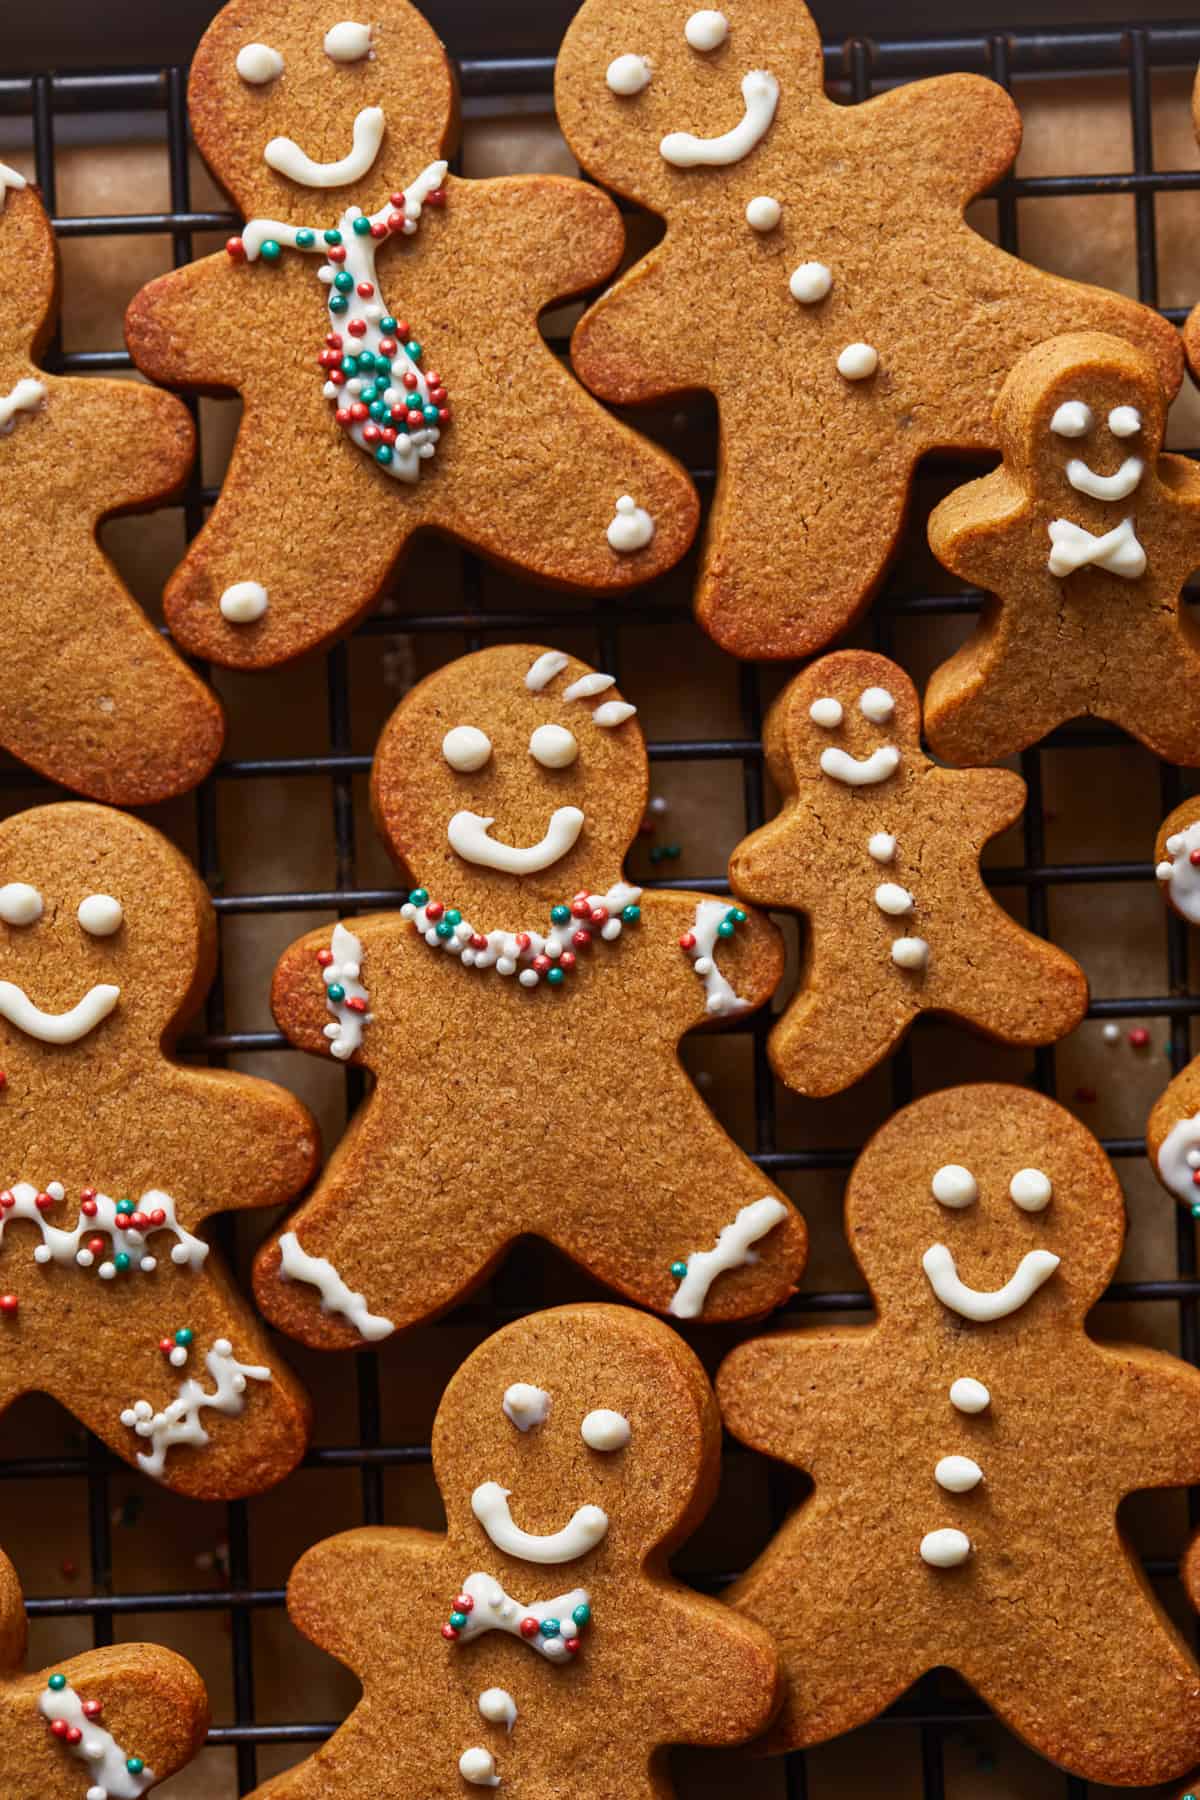 https://www.thecookierookie.com/wp-content/uploads/2022/12/gingerbread-cookies-recipe.jpg